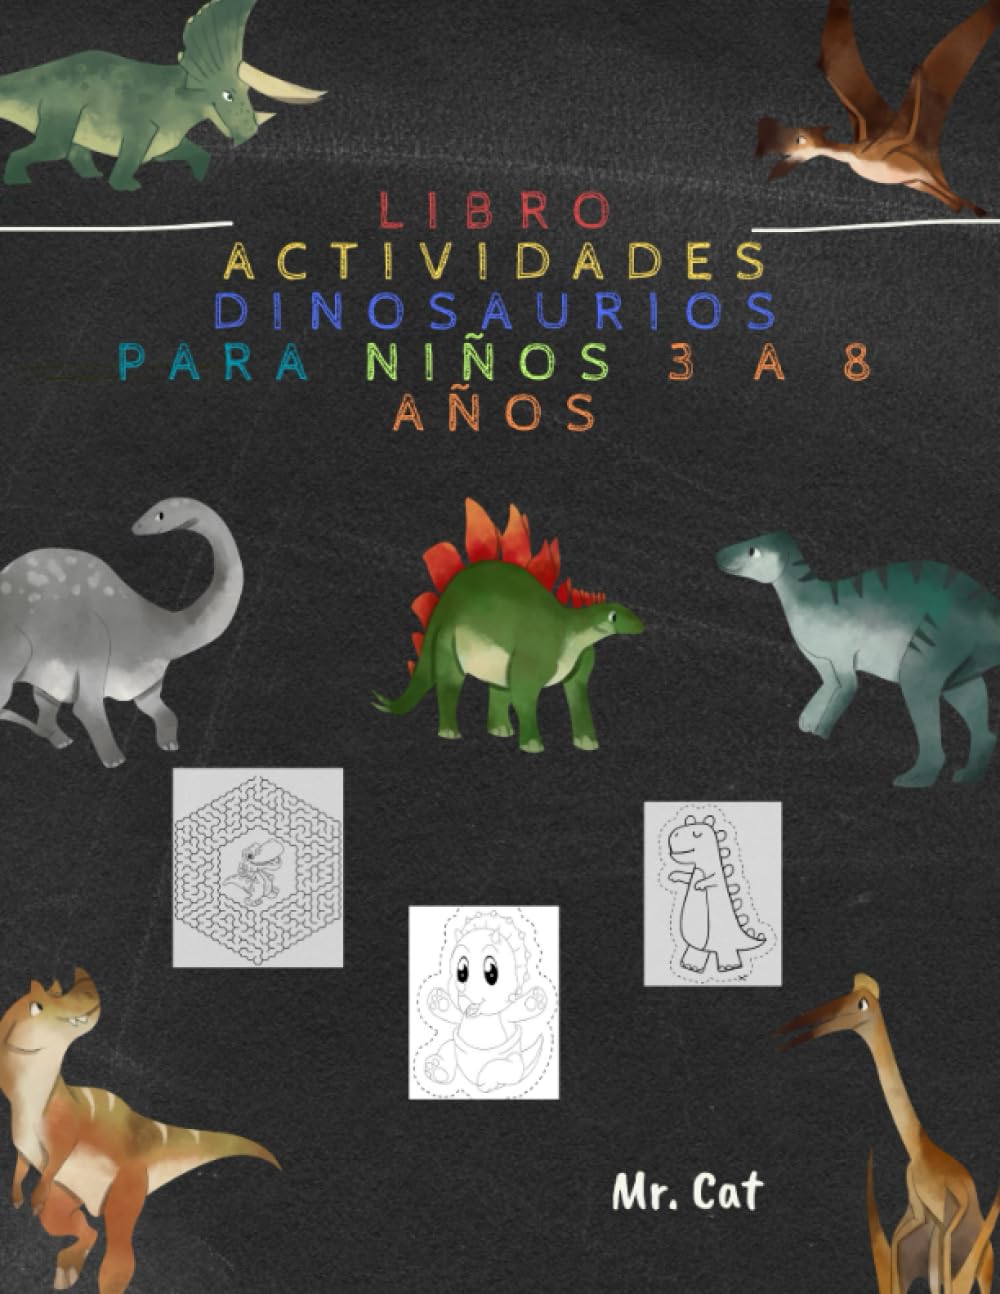 Libro: Actividades con dinosaurios para niños 3 a 8 años por Mr. Cat